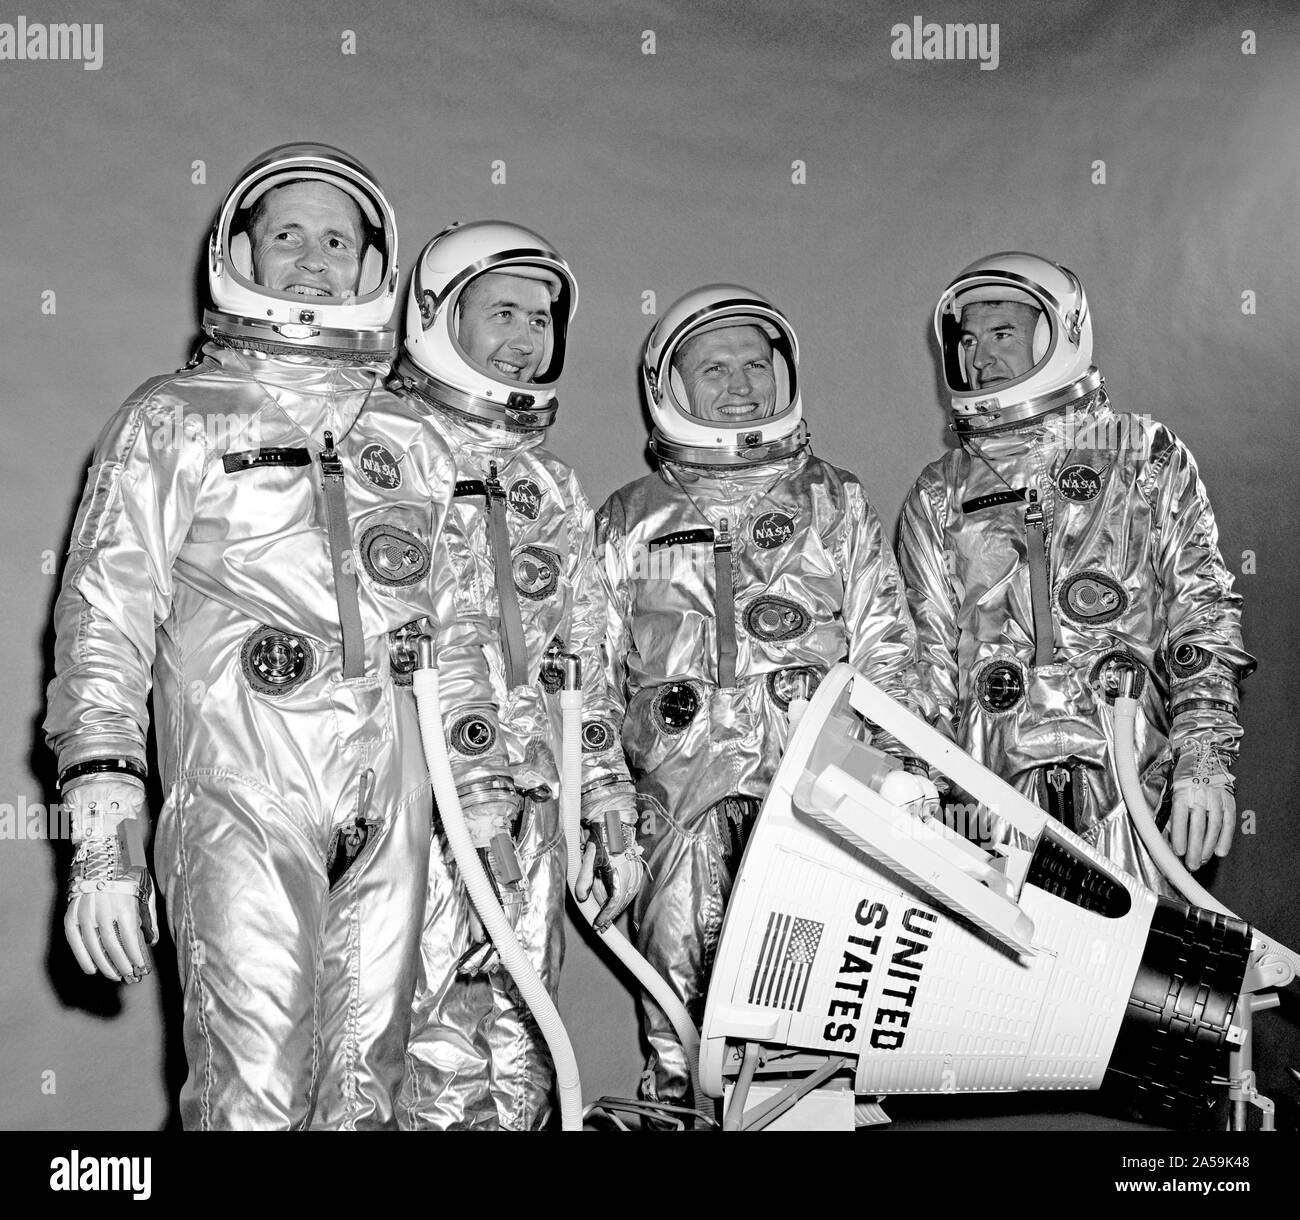 (10 Sett. 1964) --- Vista della Gemini-4 Il primo equipaggio e equipaggio di riserva di pressione adatta. Essi sono in piedi intorno a un modello di veicolo spaziale Gemini. Da sinistra a destra gli astronauti sono Edward H. White II, pilota; James McDivitt A., il comando pilota; Frank Borman e James A. Lovell Jr., equipaggio di riserva. Foto Stock